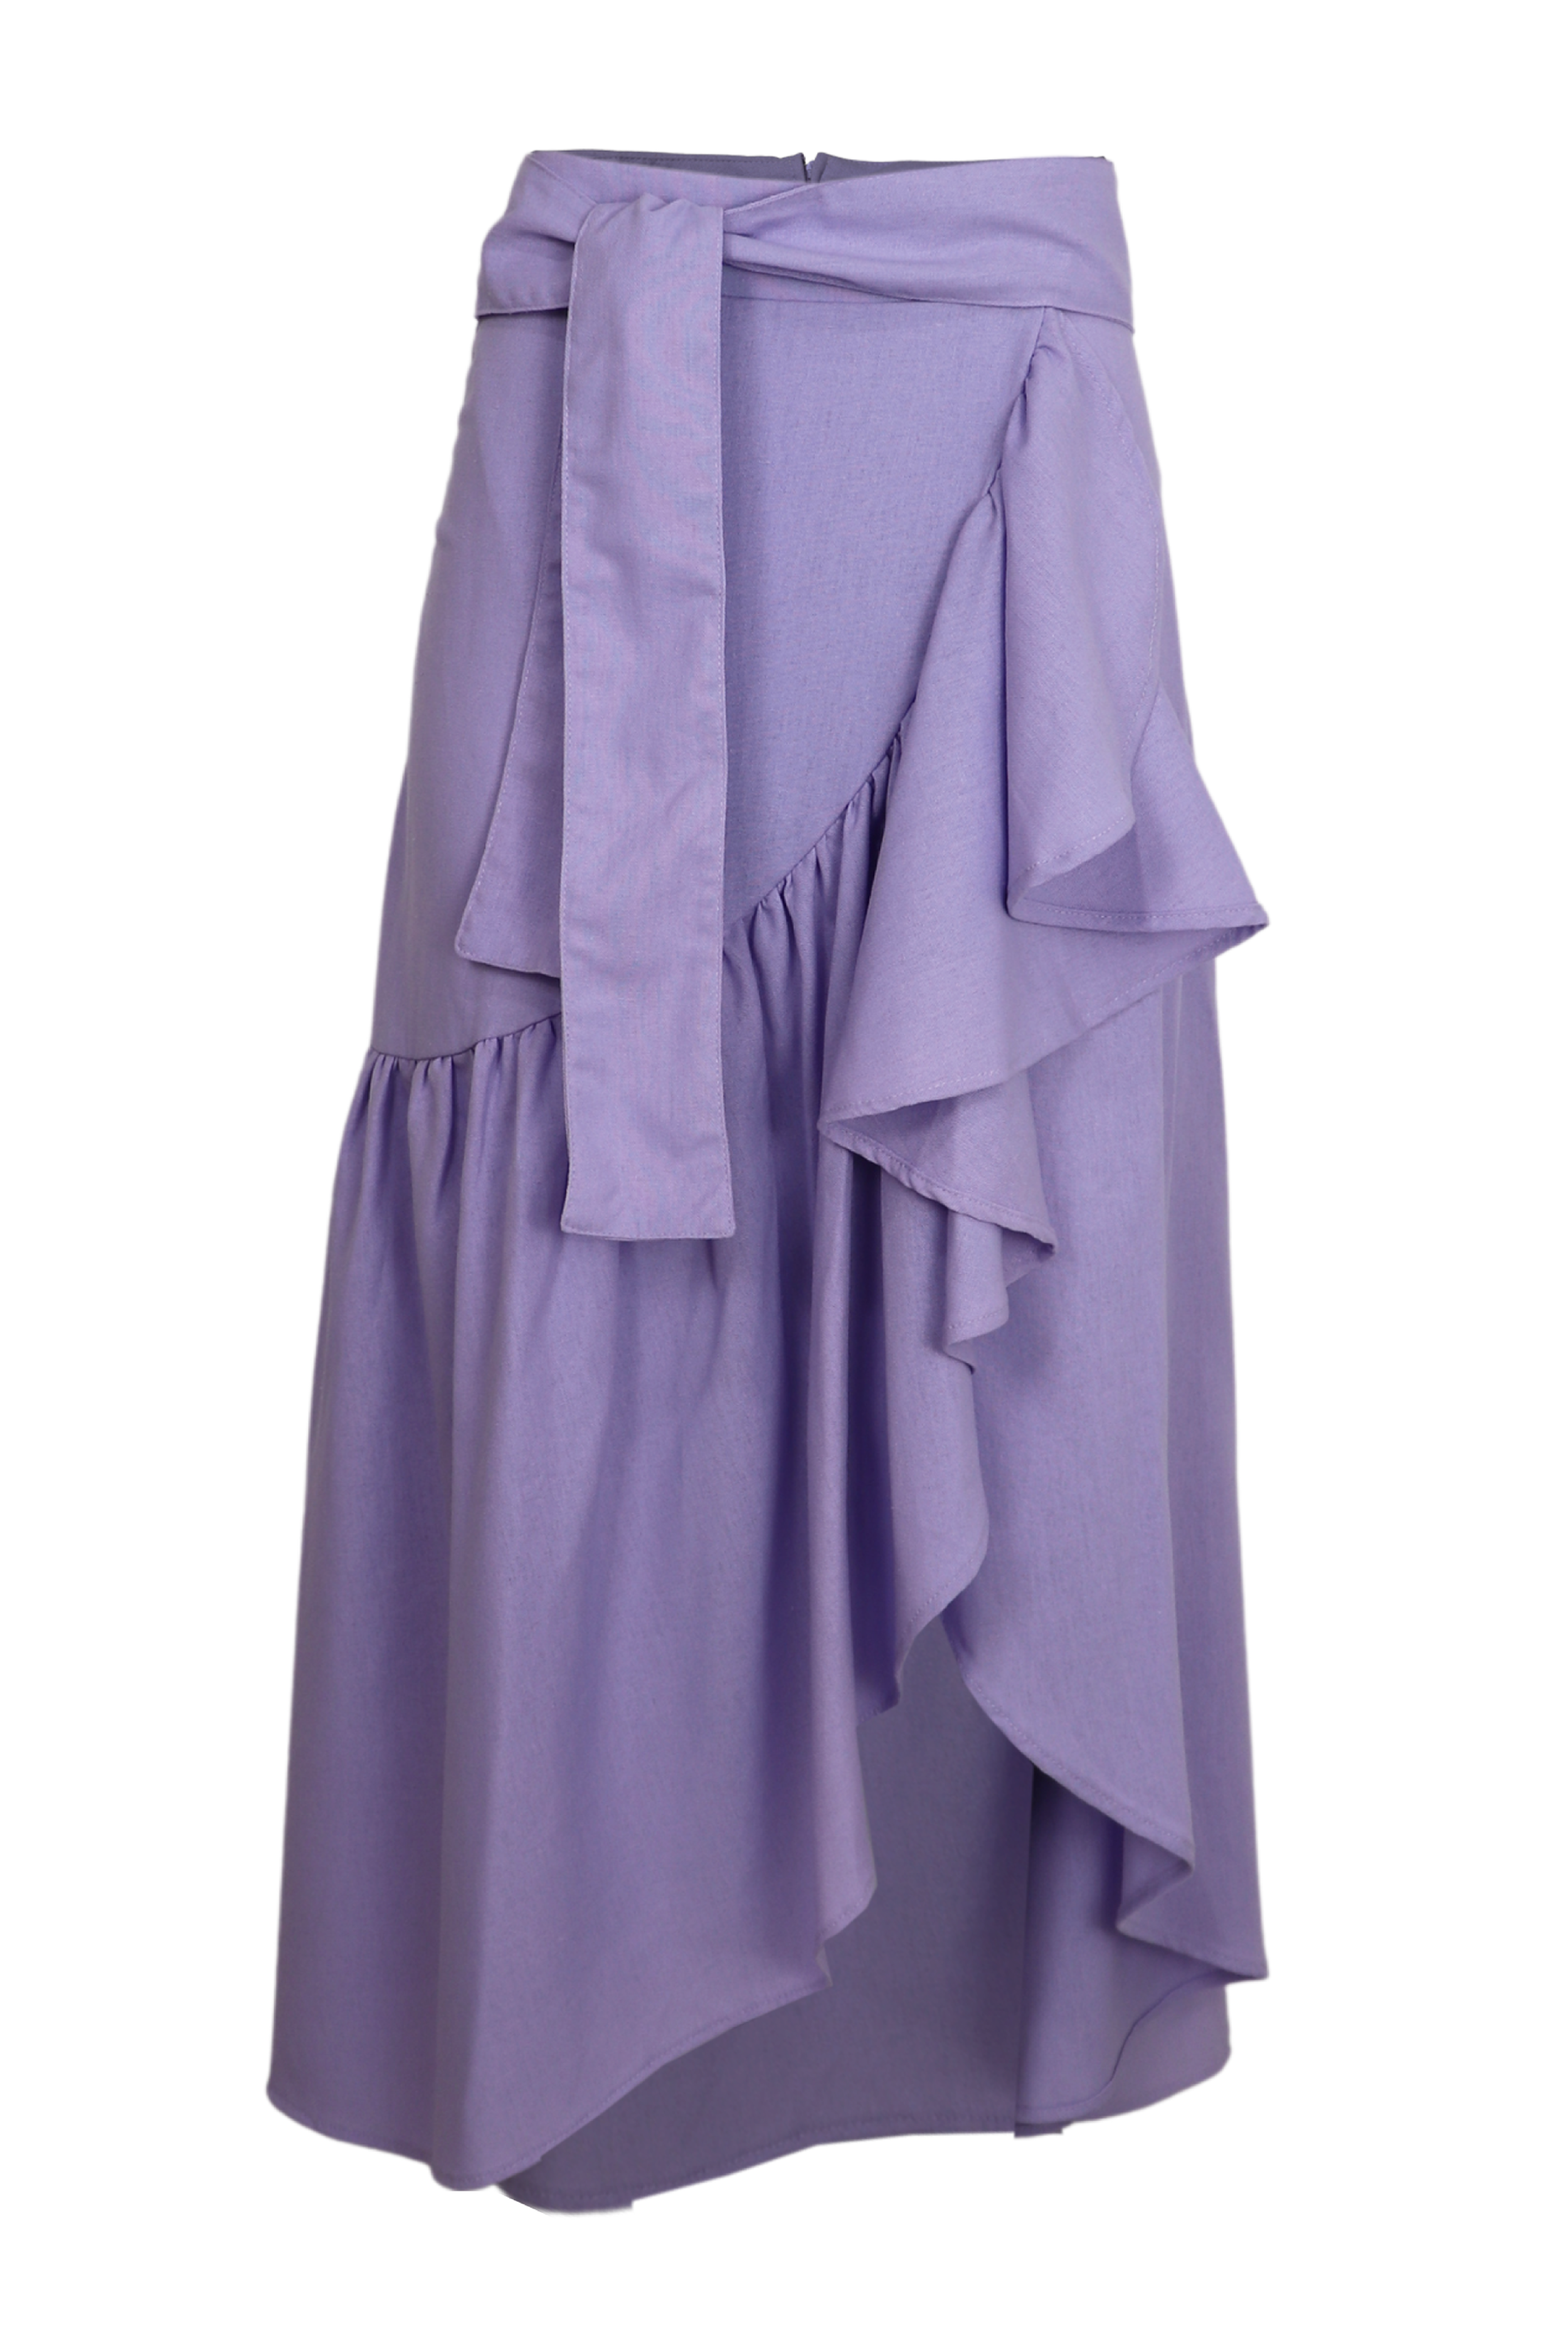 Falda con drapeado lila